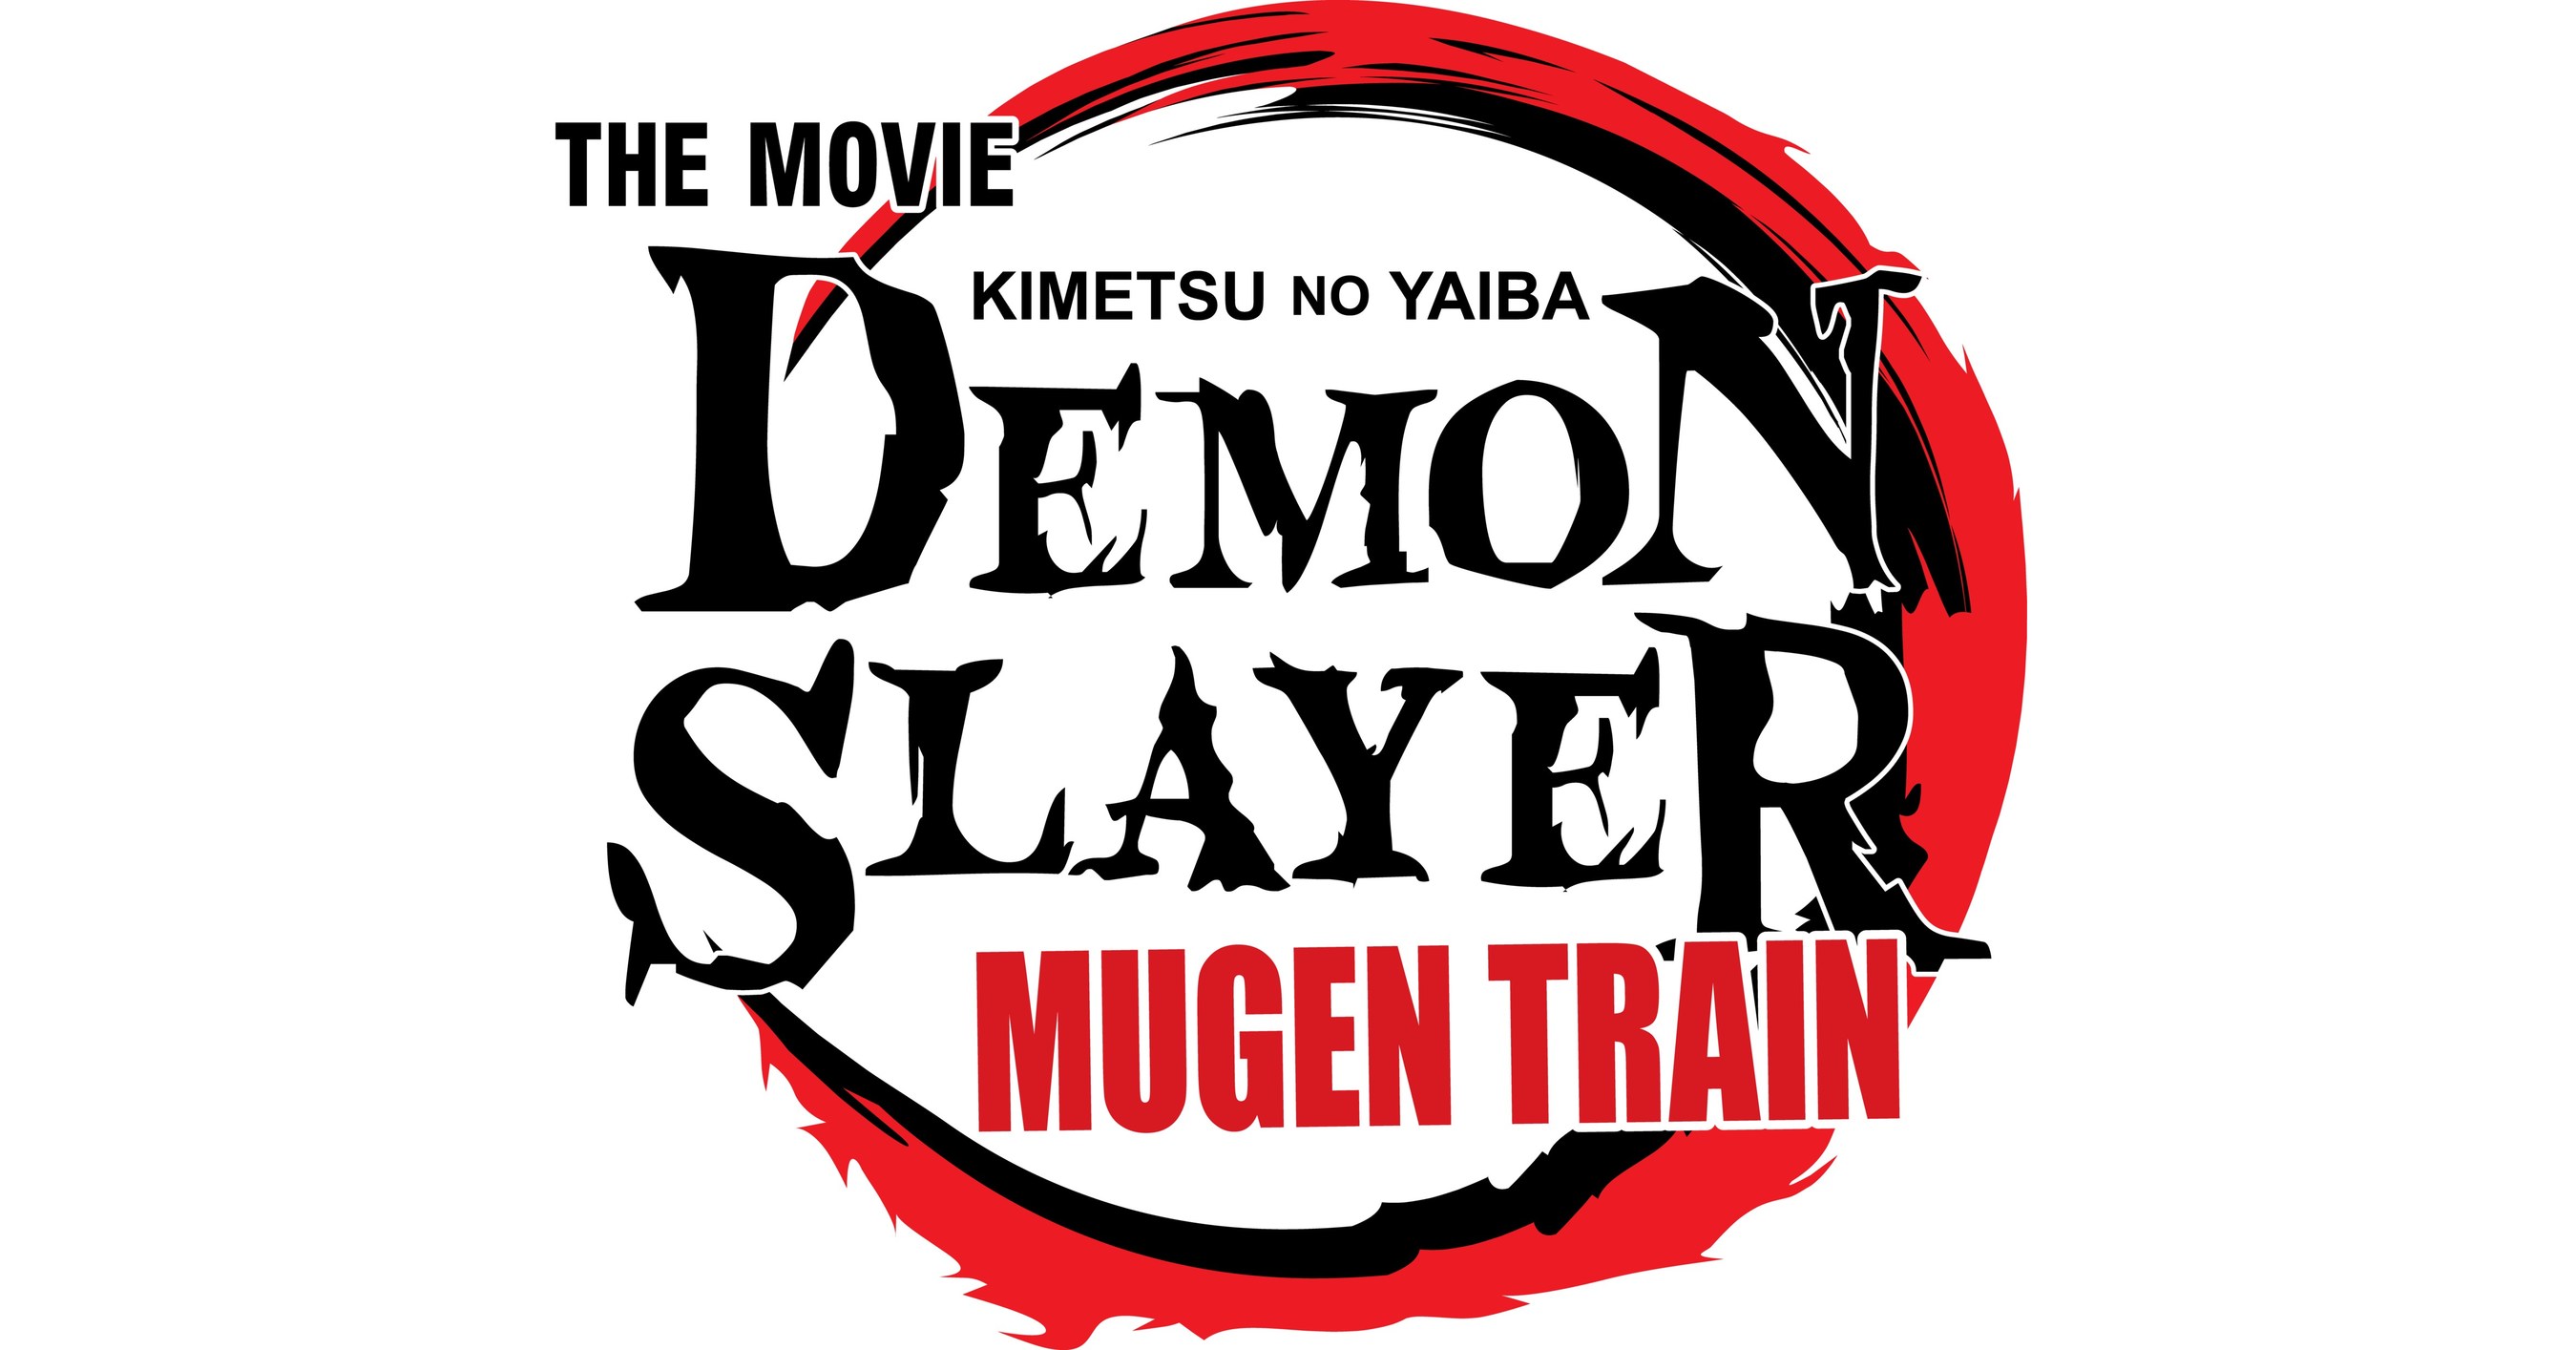 Mugen Train naďalej dominuje pokladni ako najrýchlejší film v Japonsku s tržbami viac ako 100 miliónov dolárov